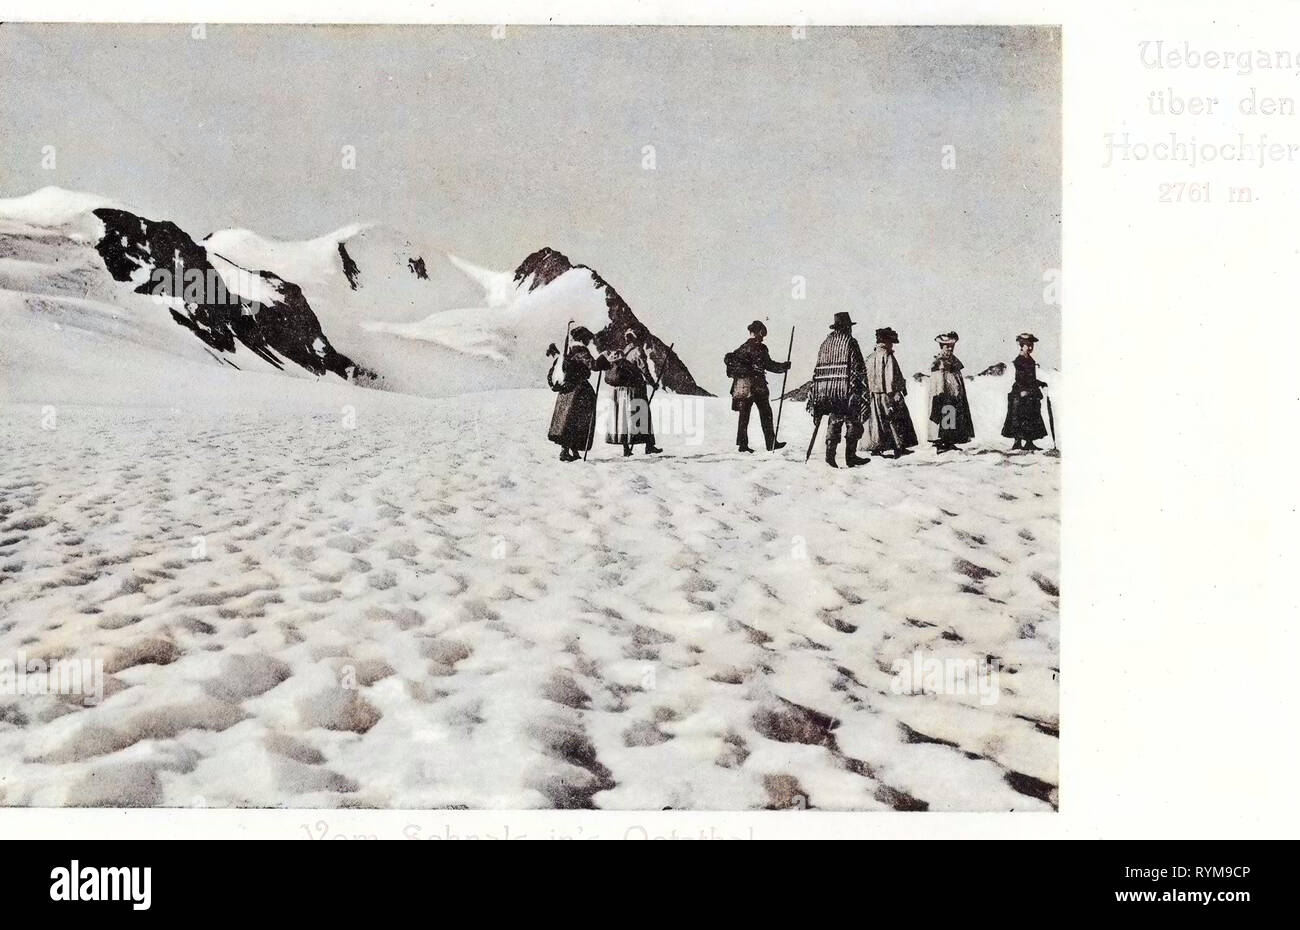 Hochjochferner, 1903, South Tyrol, Schnals, Vom Schnals ins Oetztal über das Hochjochferner Stock Photo